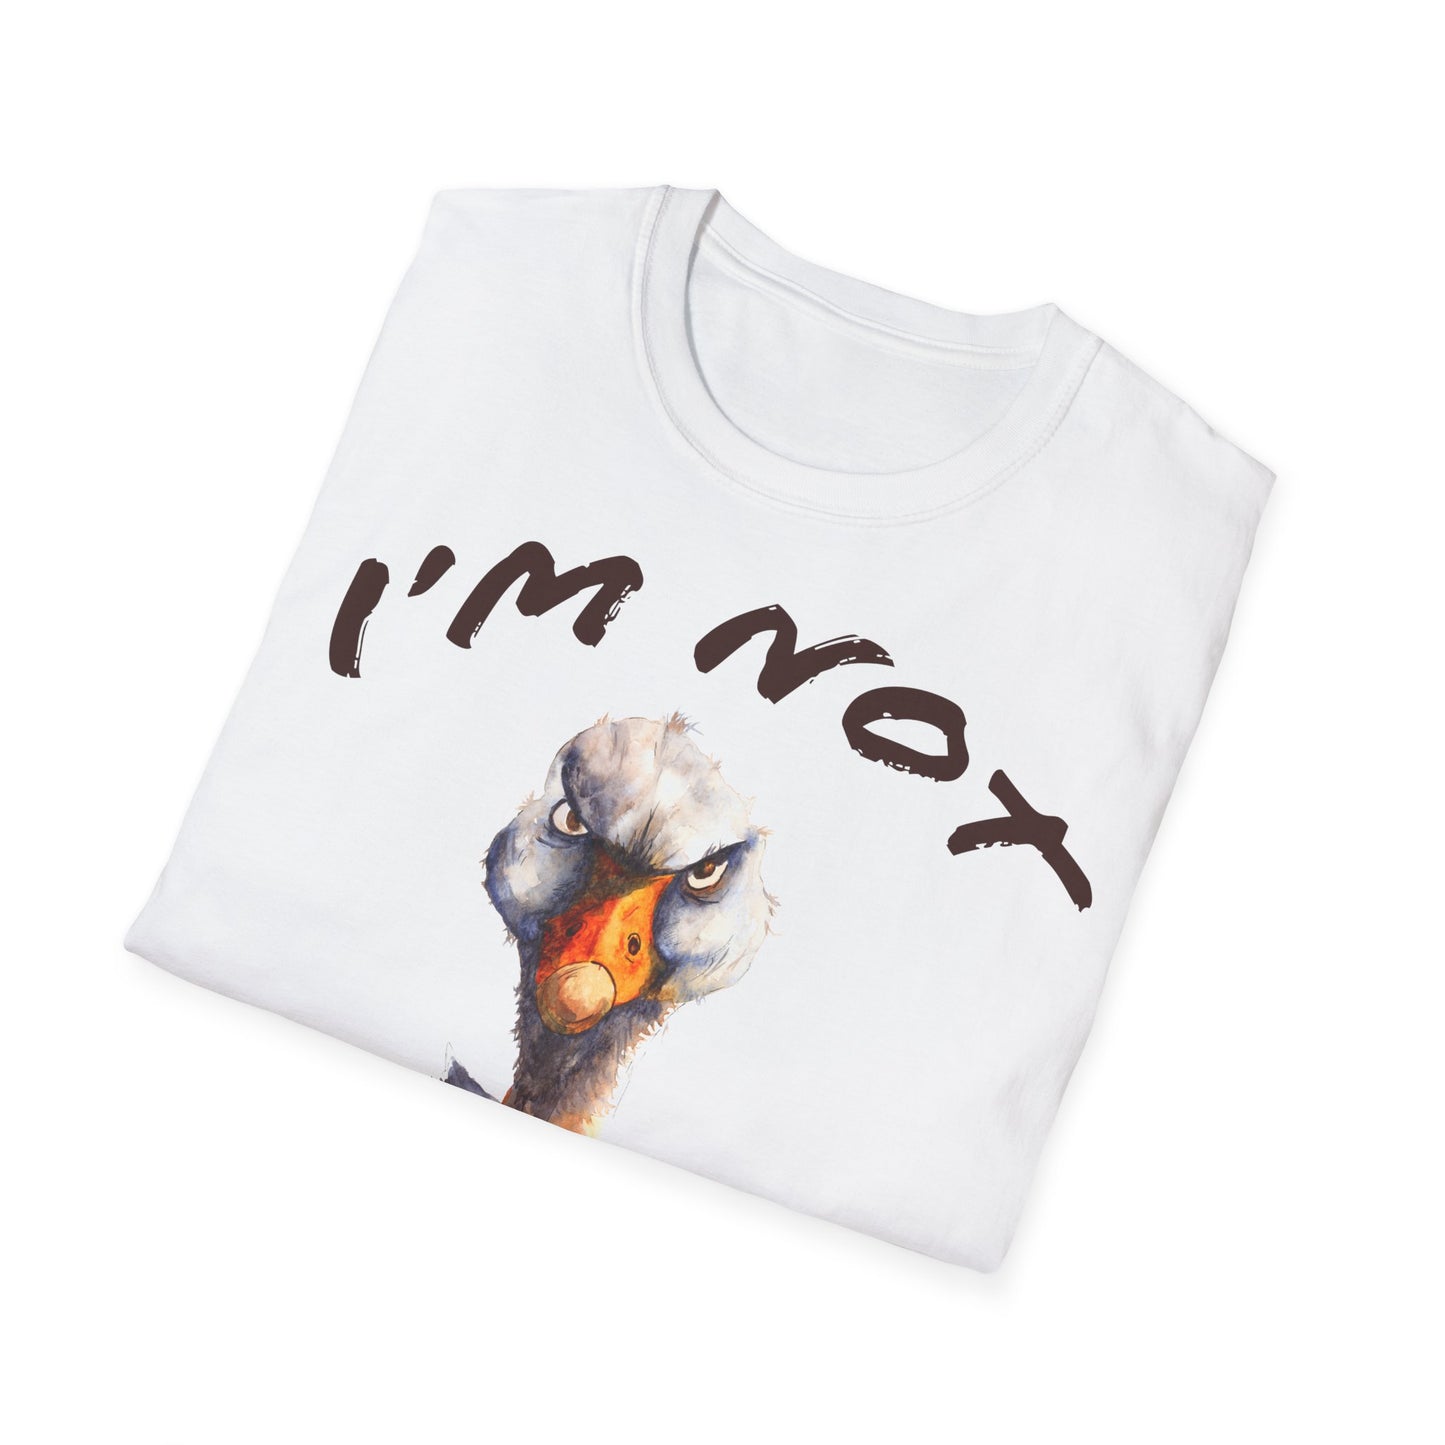 MyT-shirtFunny: Unisex t-shirt/coffee/coffee t-shirt/coffee t-shirt/coffee quotes/t-shirt with coffee quotes/funny t-shirt